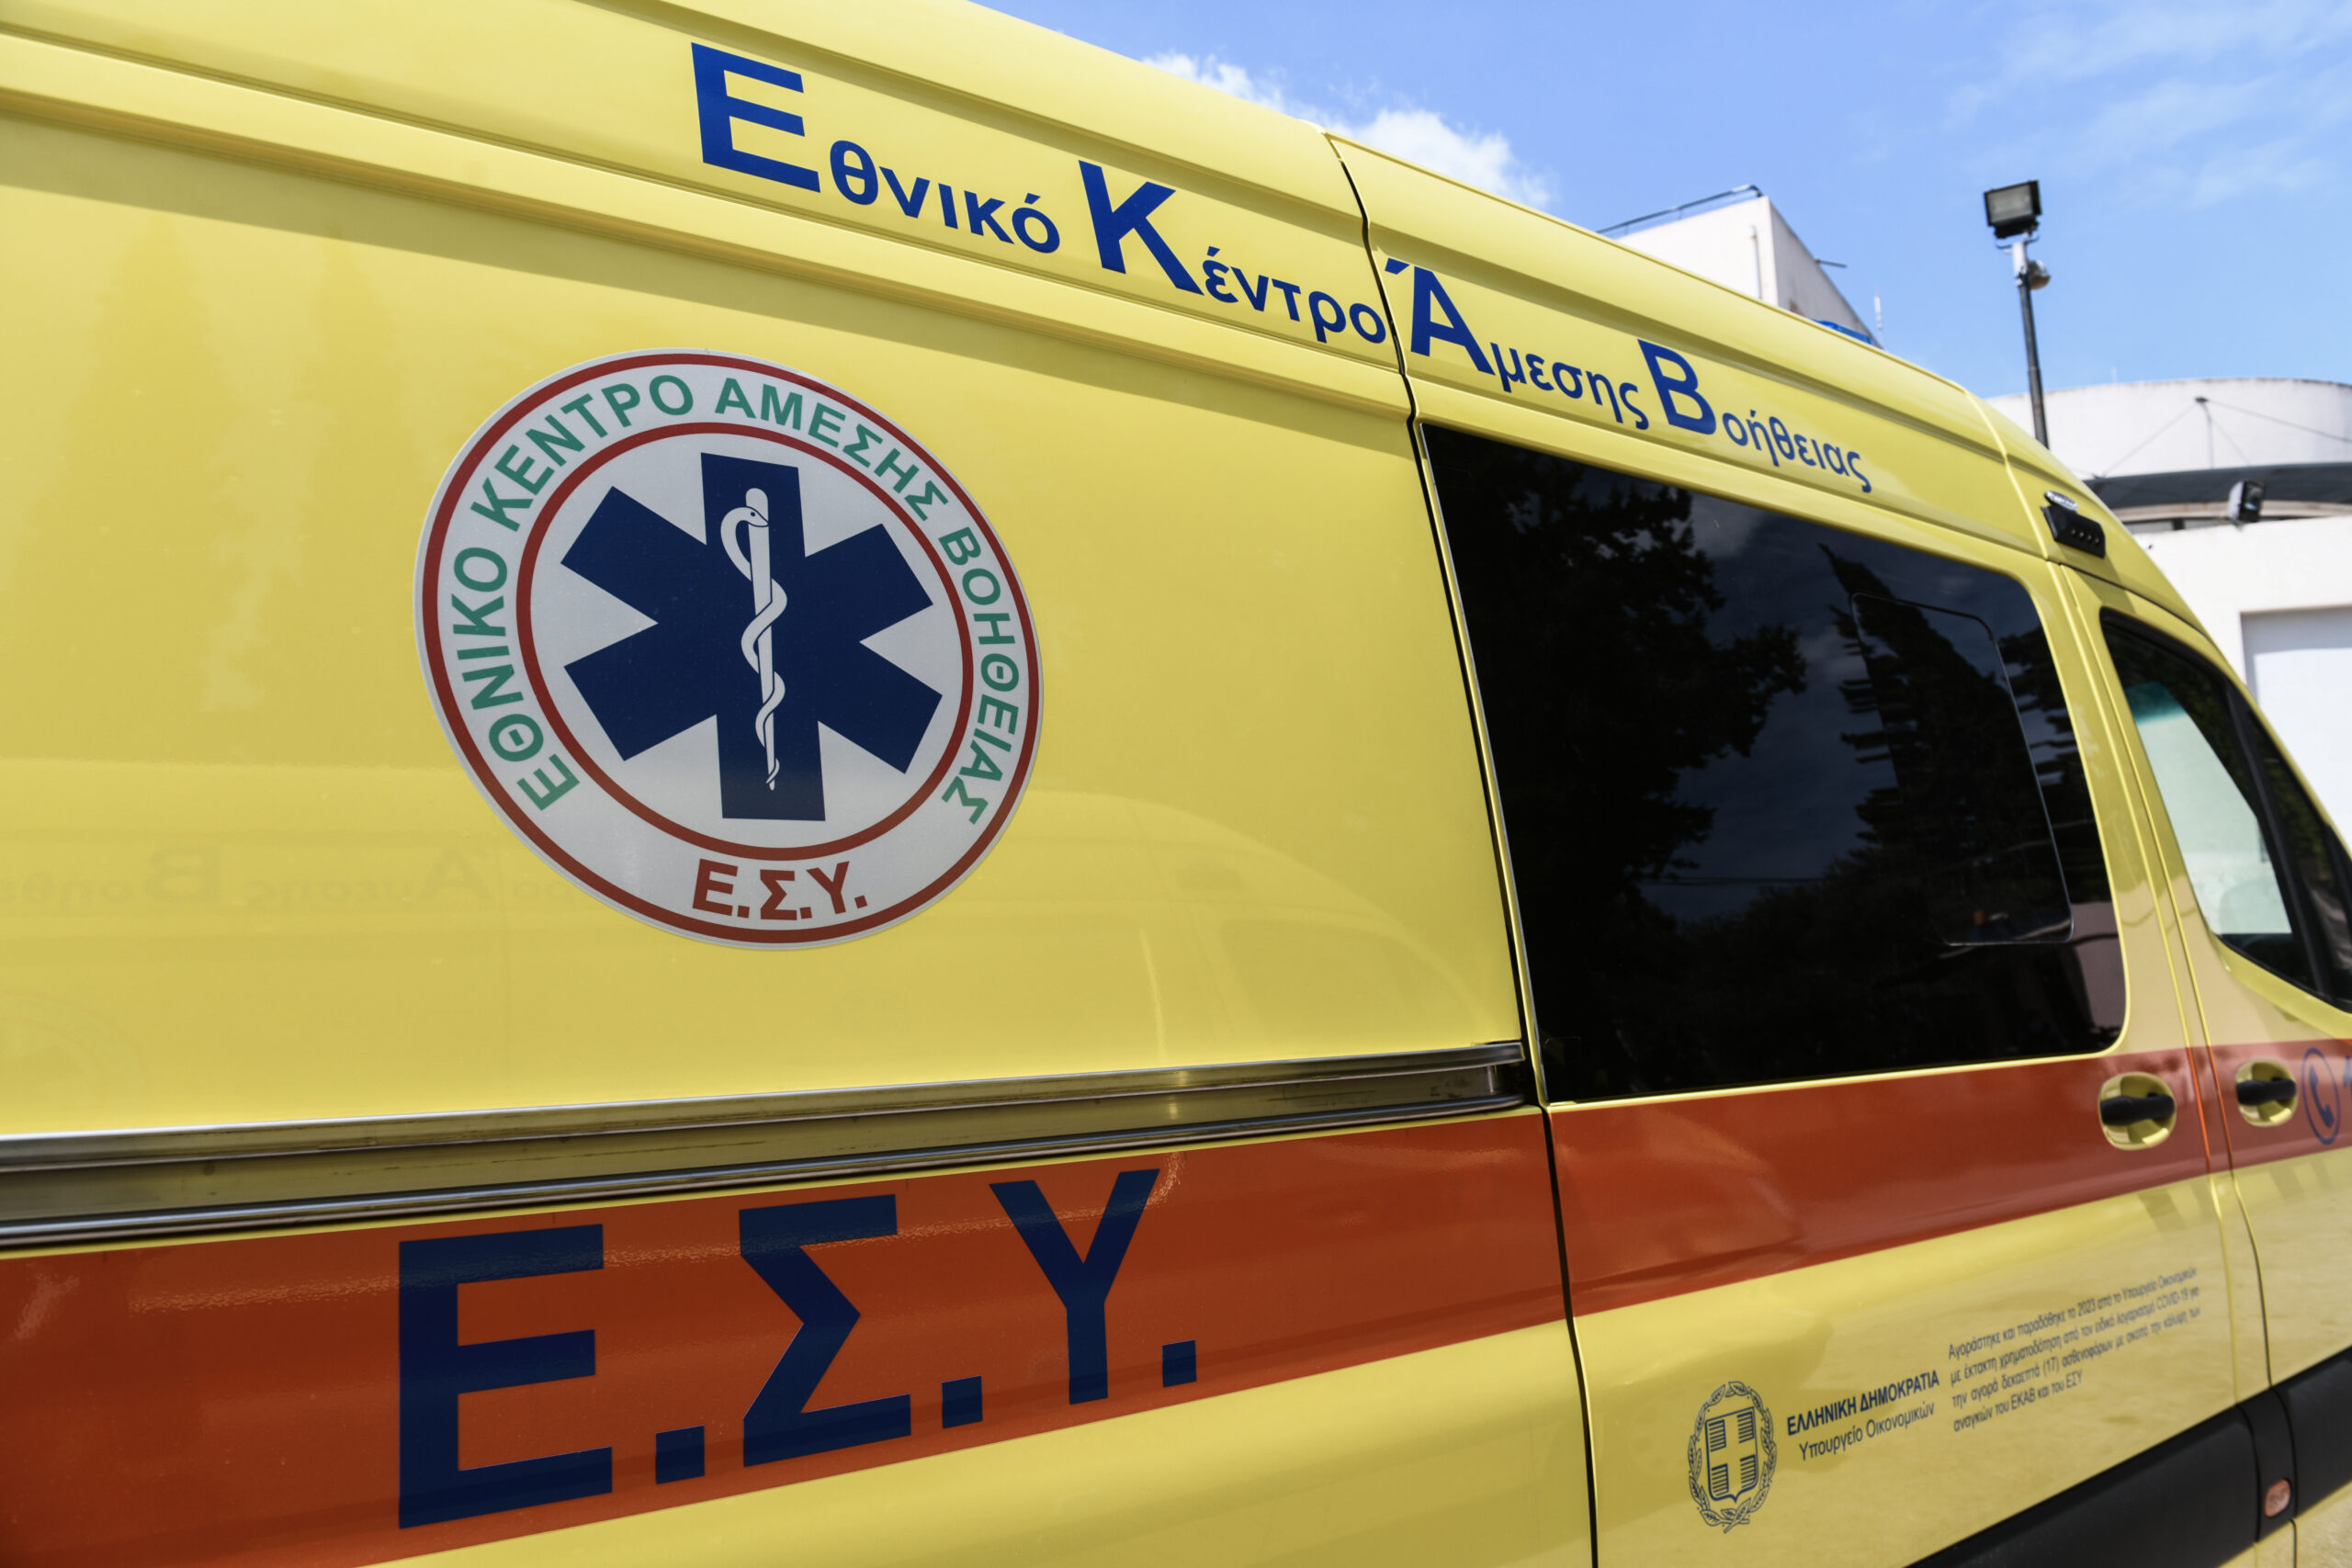 Ηλικιωμένος μεταφέρθηκε για προληπτικούς λόγους στο νοσοκομείο μετά από πυρκαγιά σε διαμέρισμα στη Θεσσαλονίκη